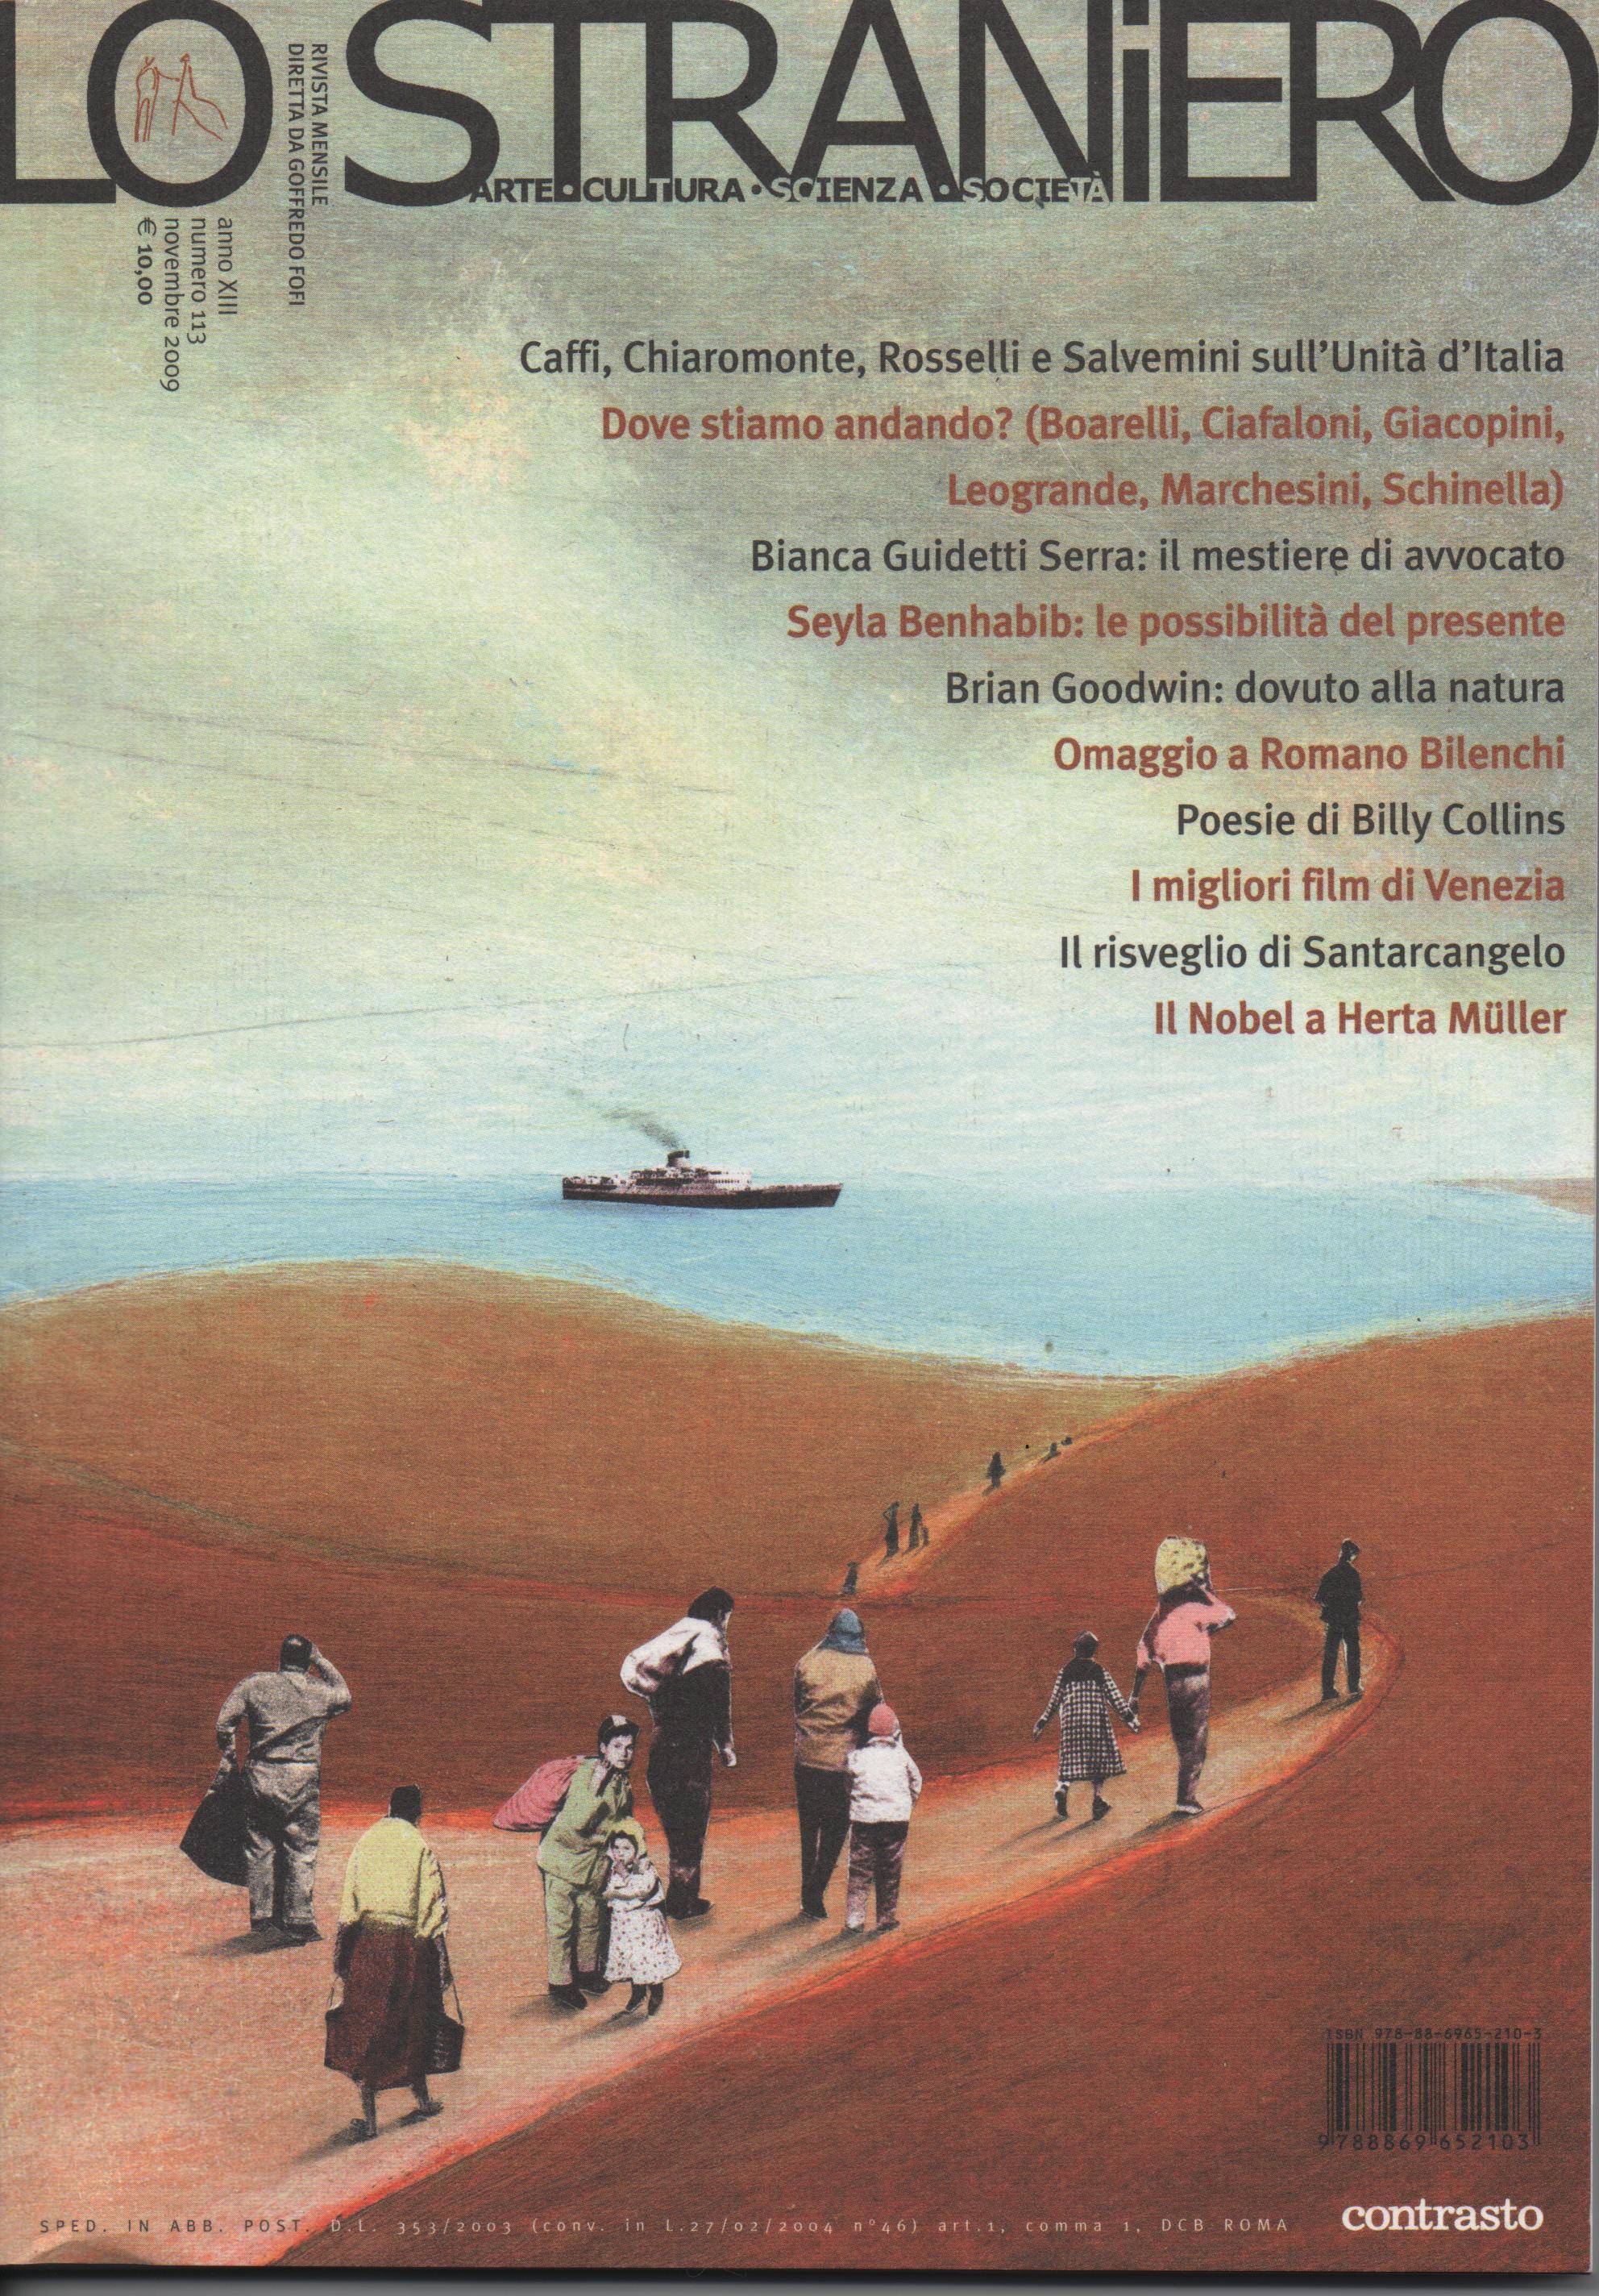 la copertina del numero di novembre 2009 della rivista letteraria